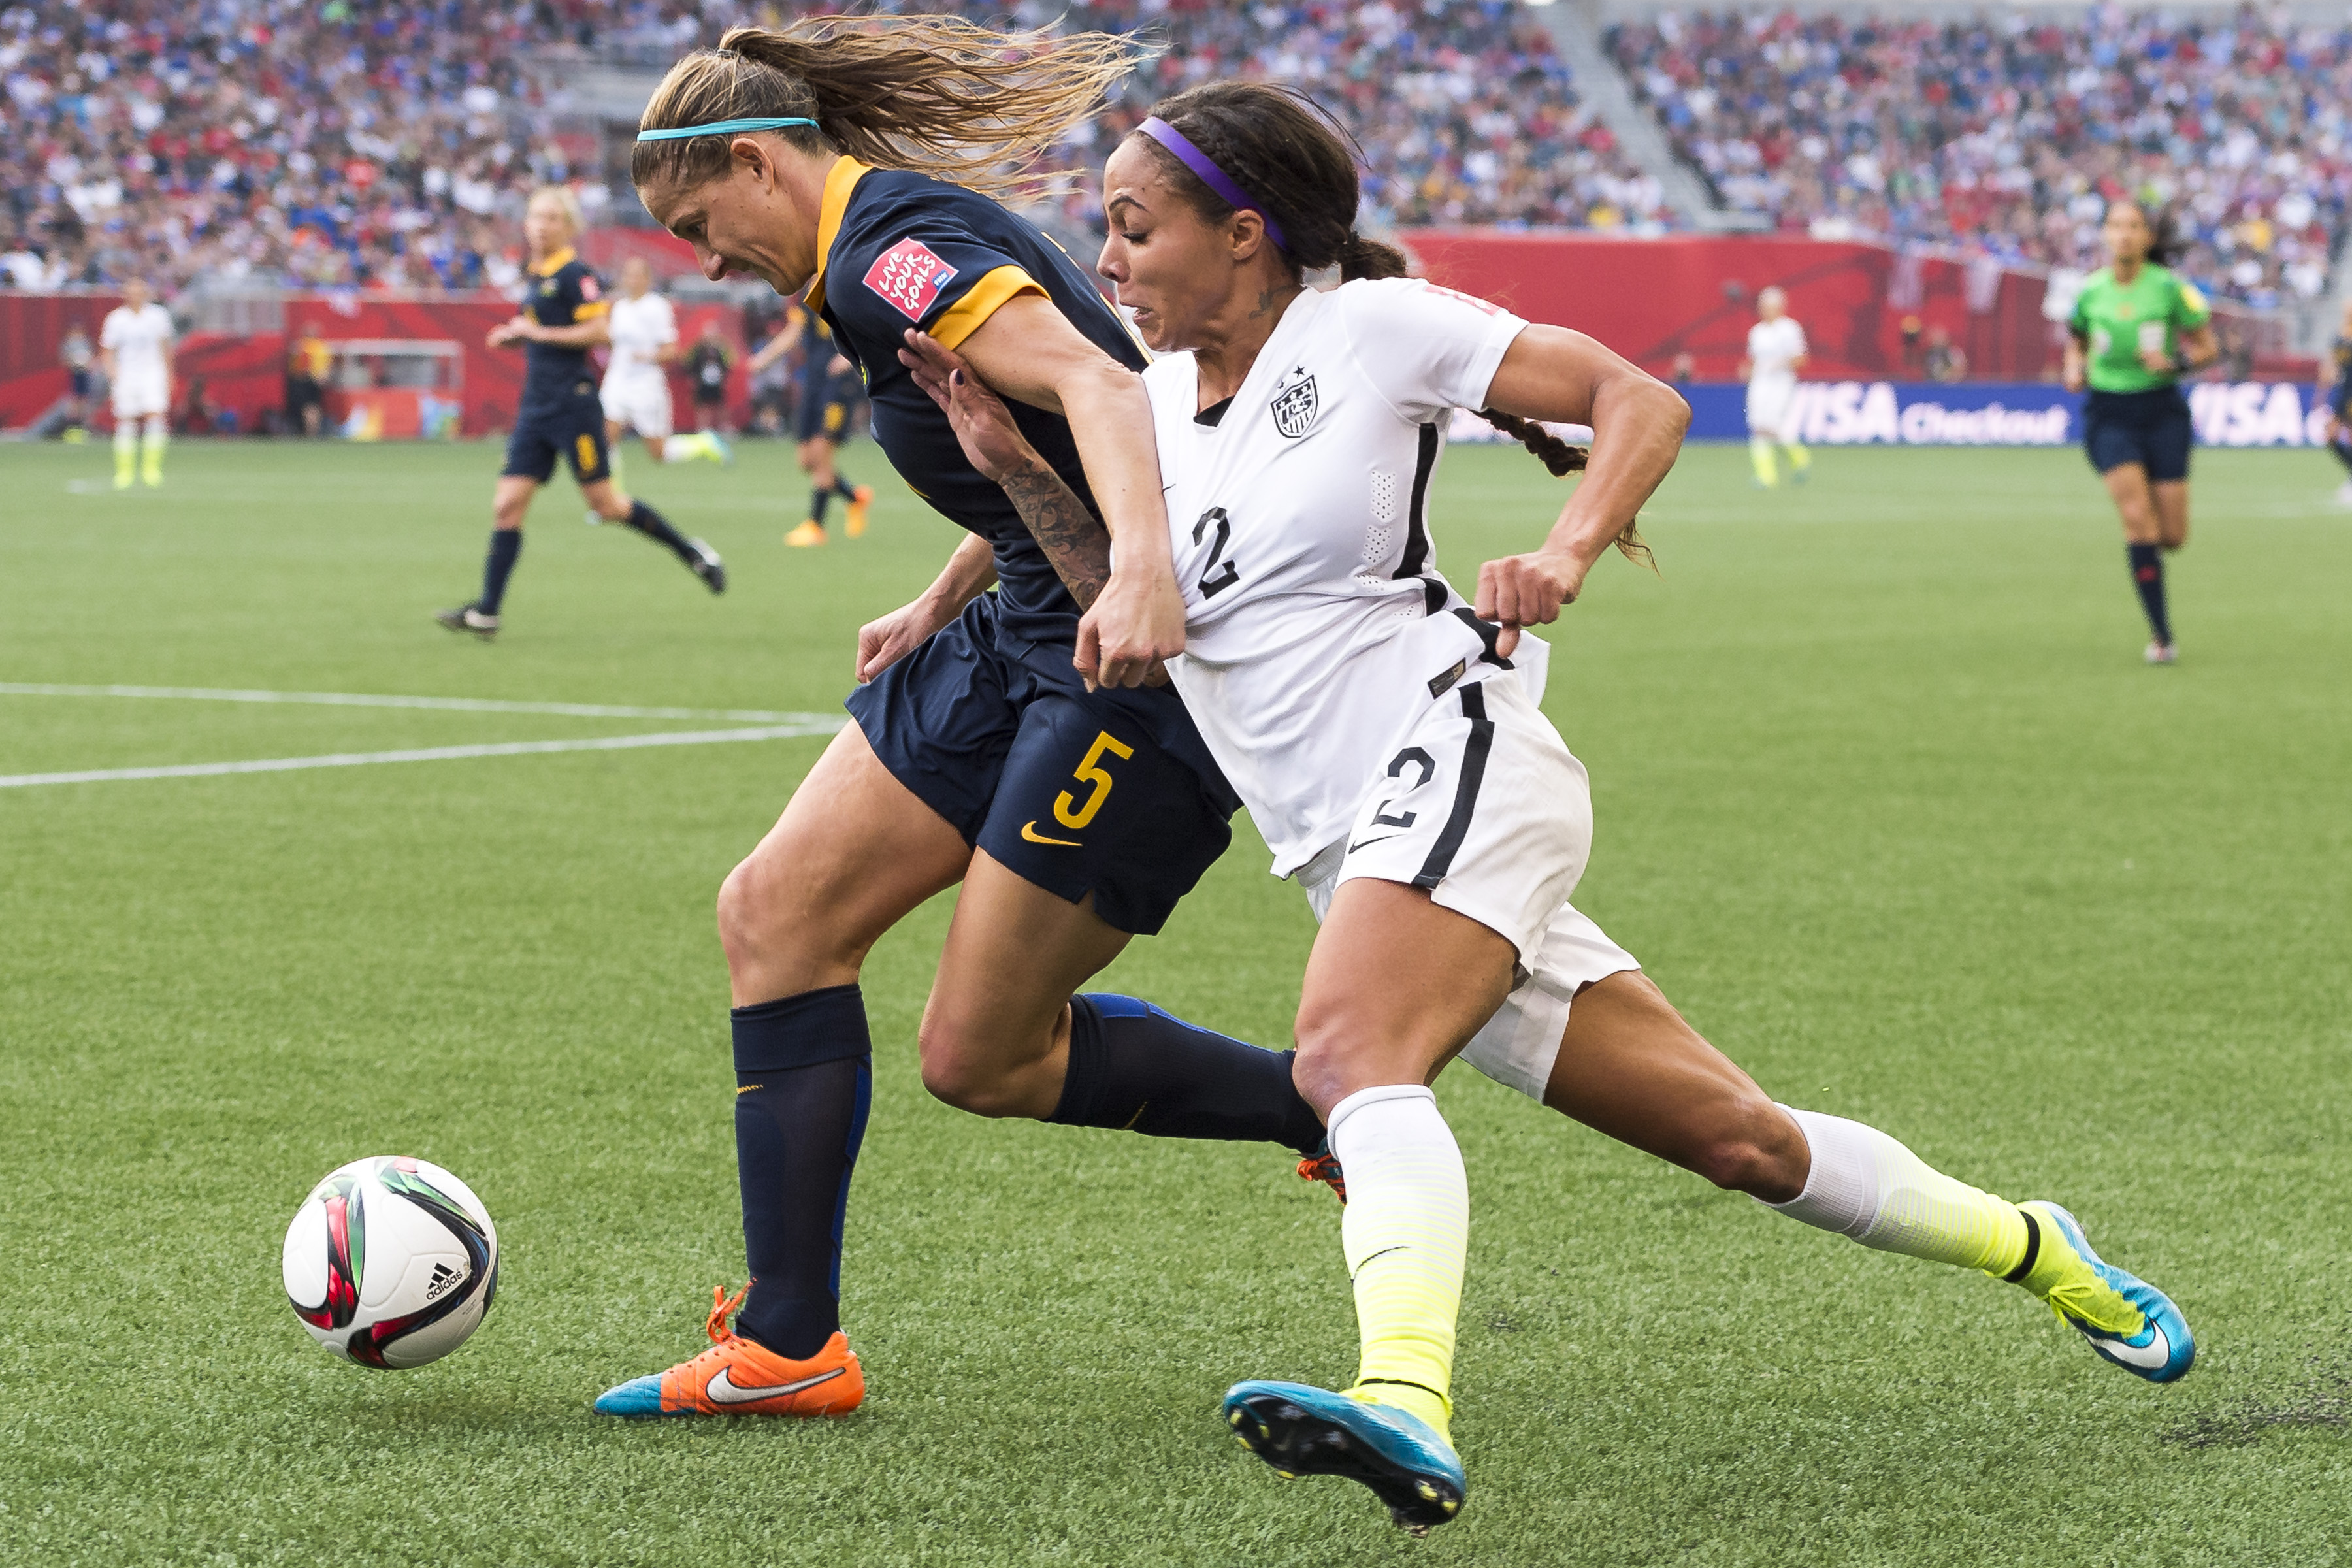 Usa Women's Soccer Goalie 2021 - Who Is The US Women's Team Goalie At